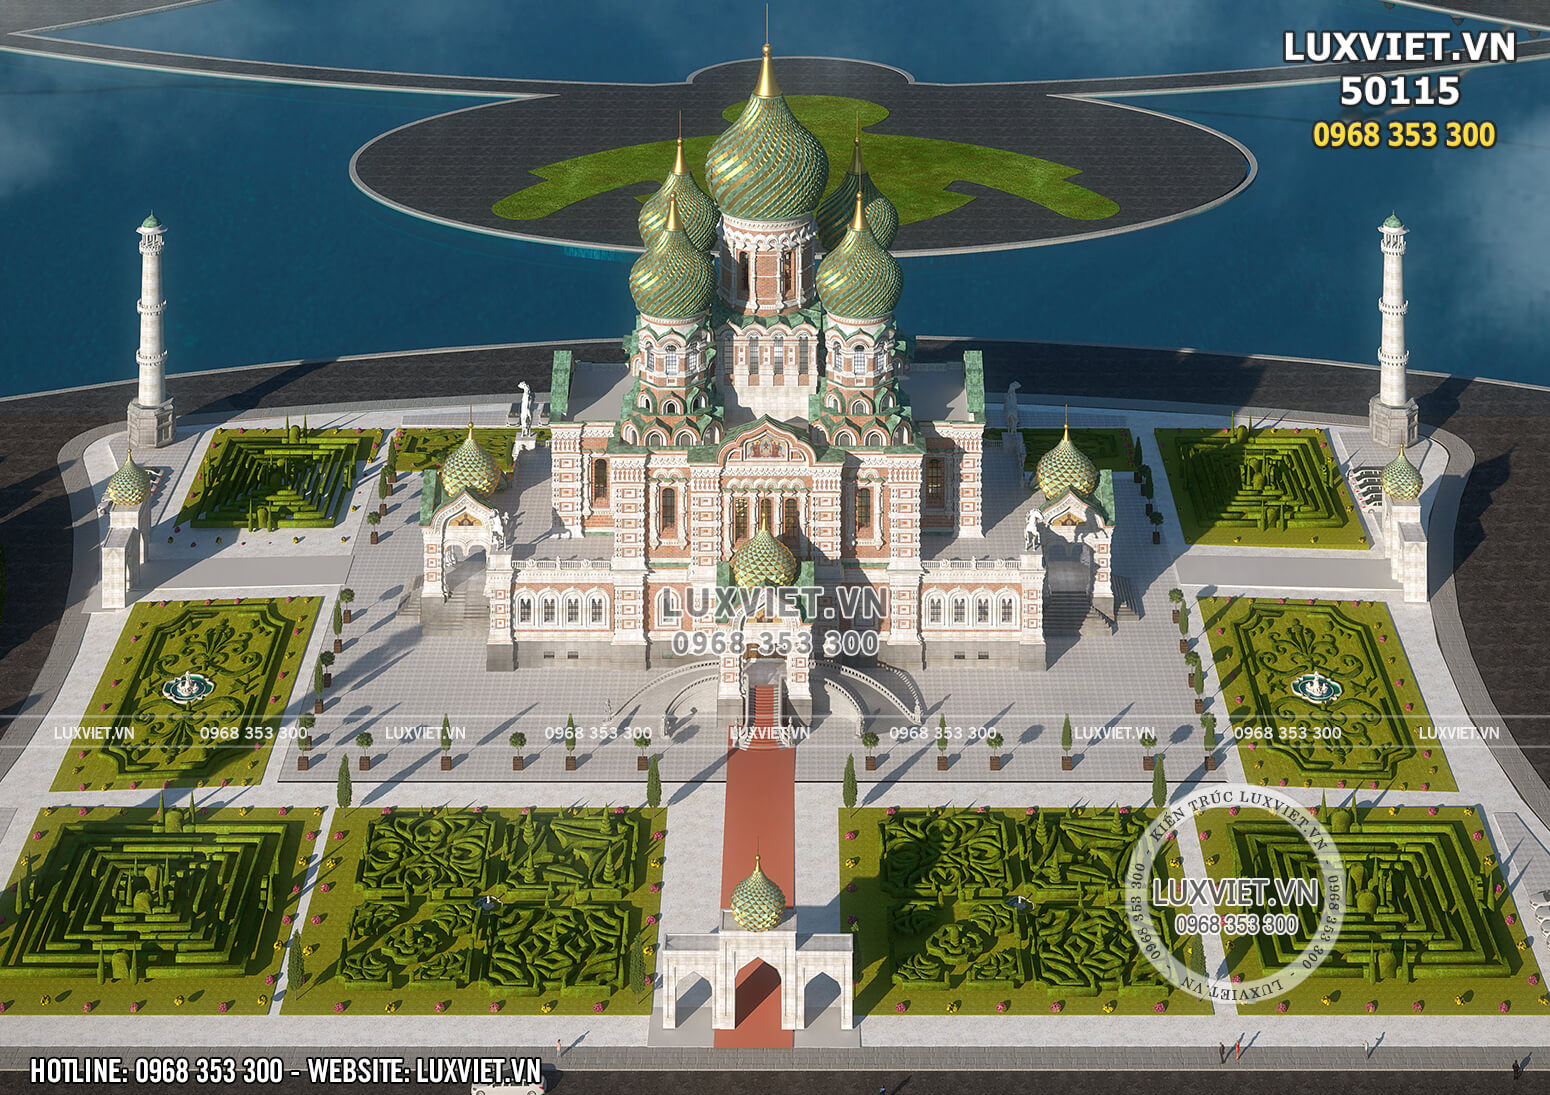 Hình ảnh: Toàn cảnh lâu đài dinh thự phong cách Nga độc đáo - LV 50115